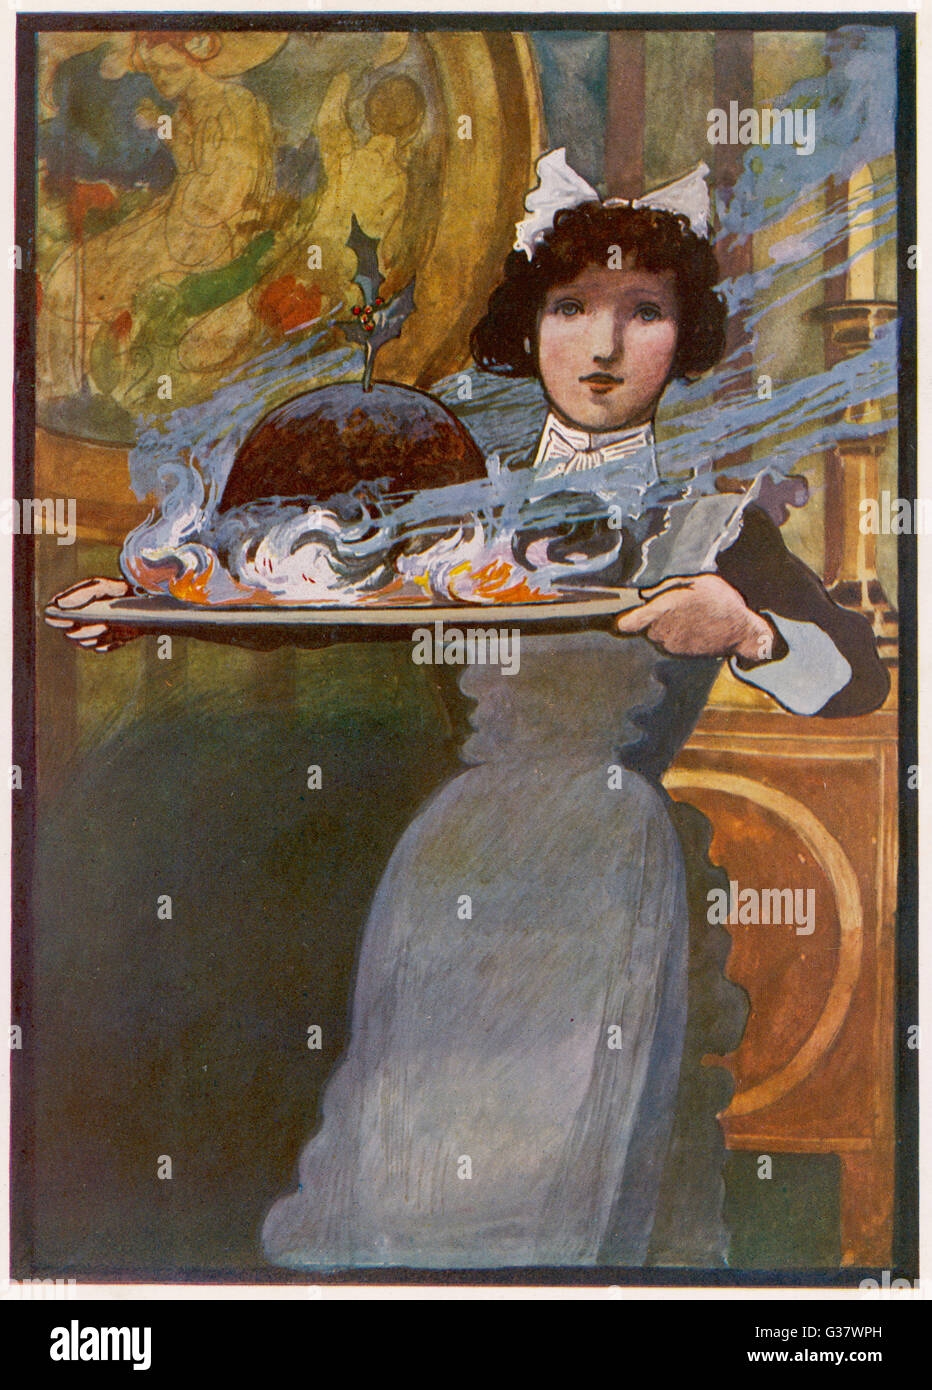 La cameriera porta il budino fiammeggiante data: 1913 Foto Stock